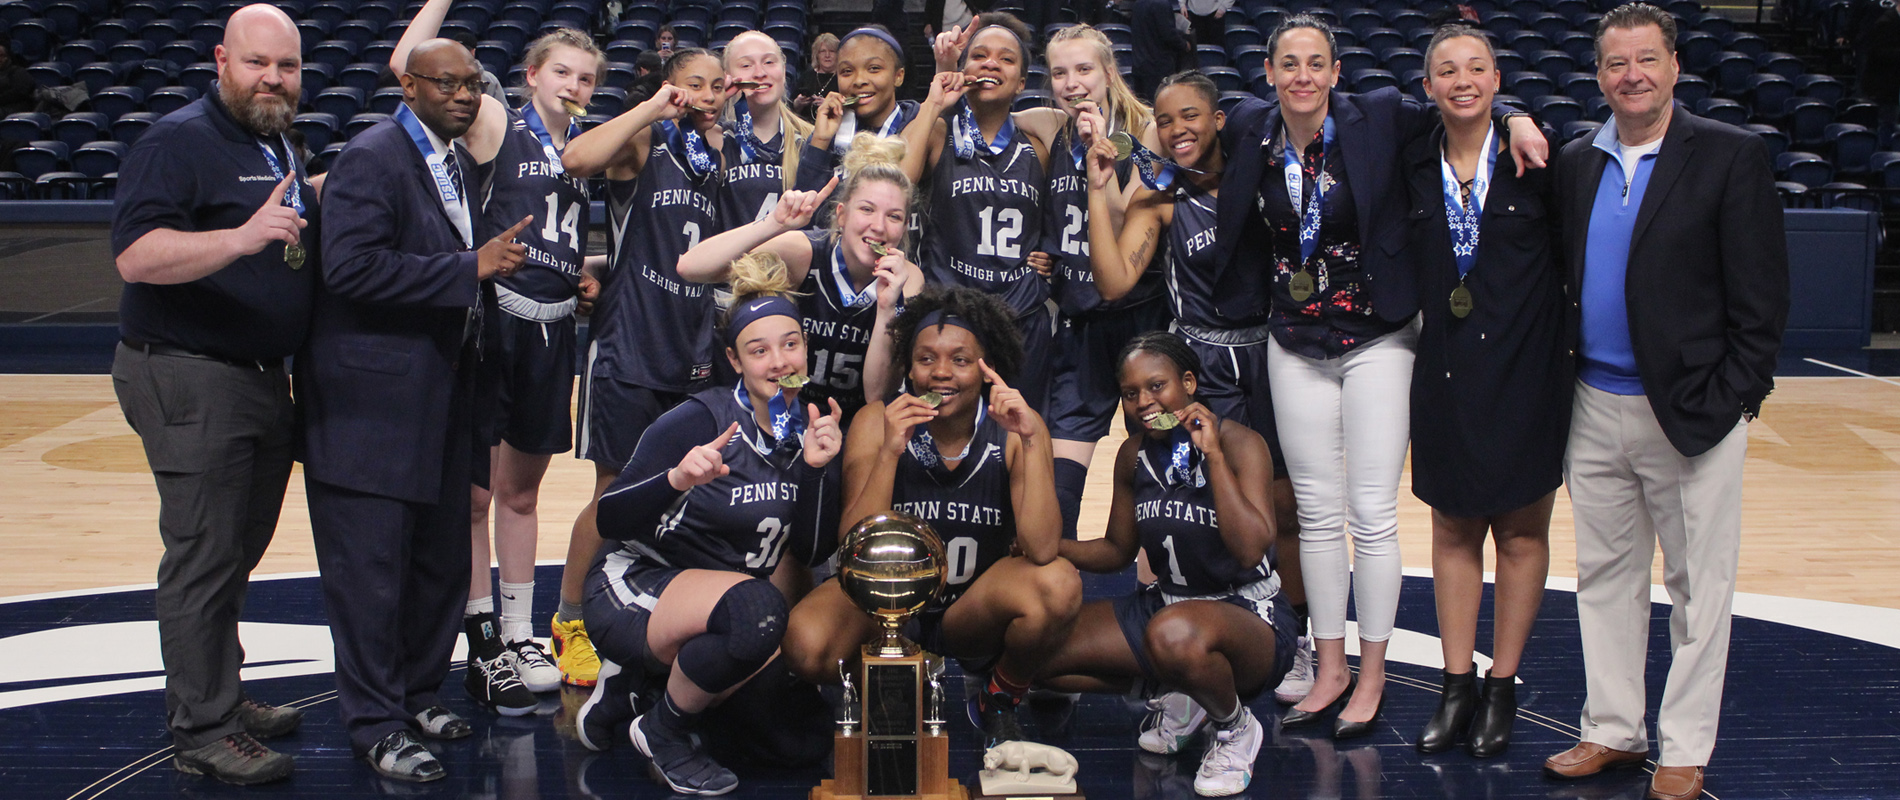 2018-19 PSUAC Women's Basketball Champions